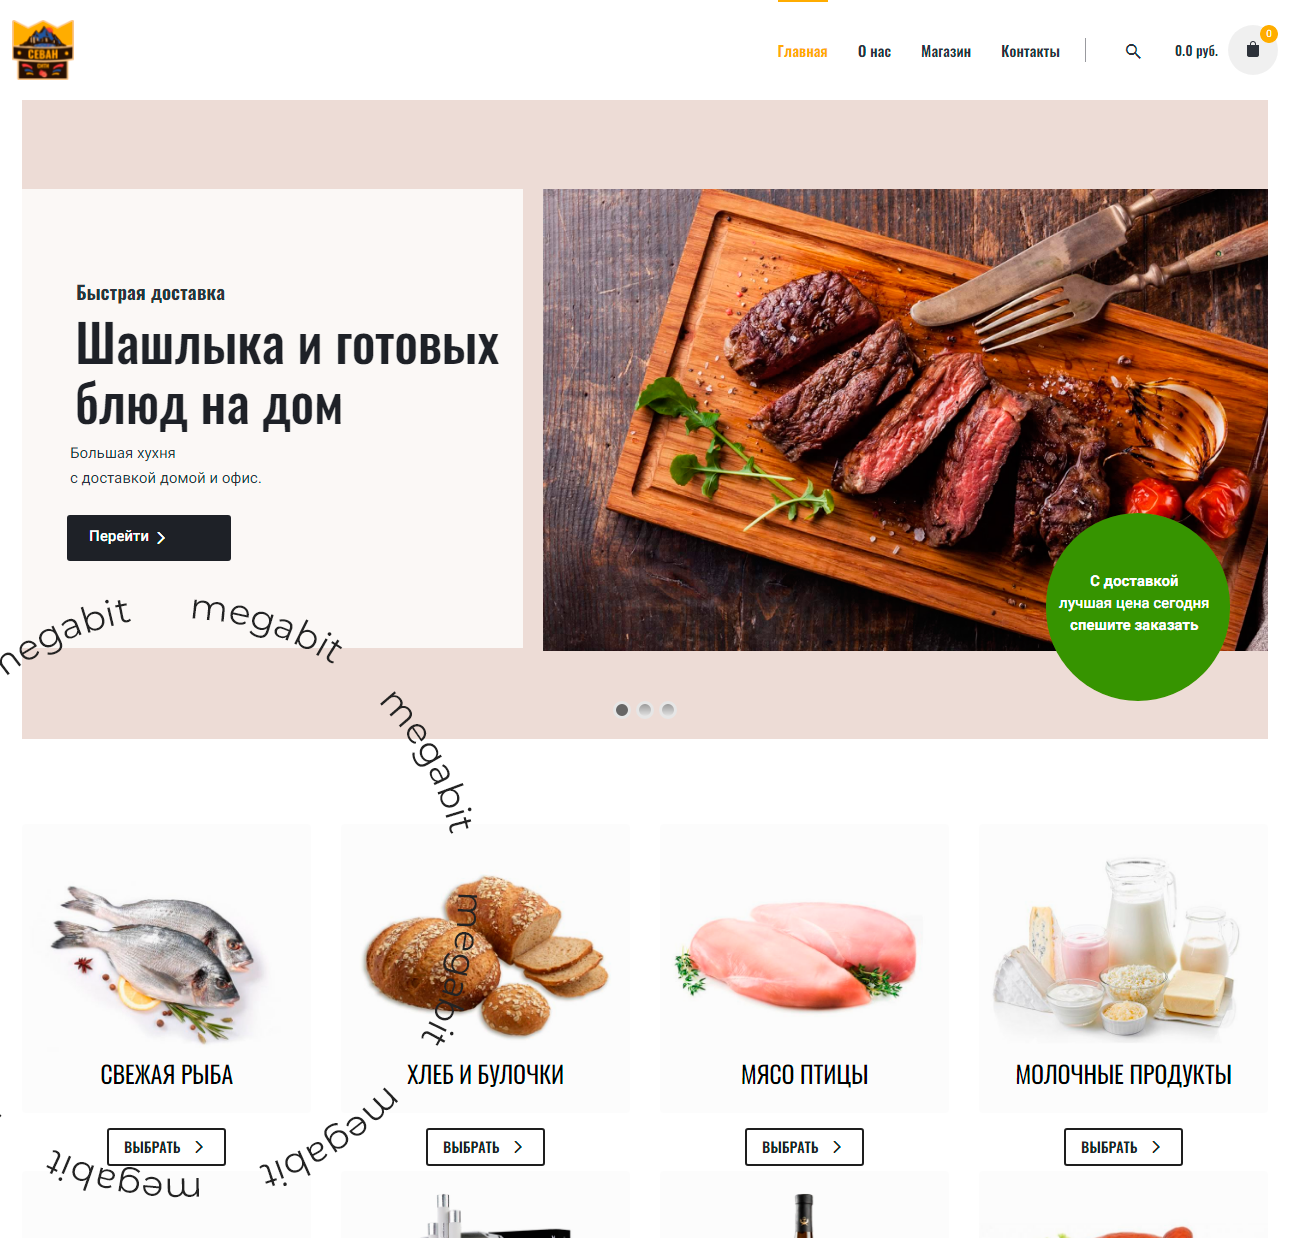 Создание интернет-магазина продуктов, продукты из армении